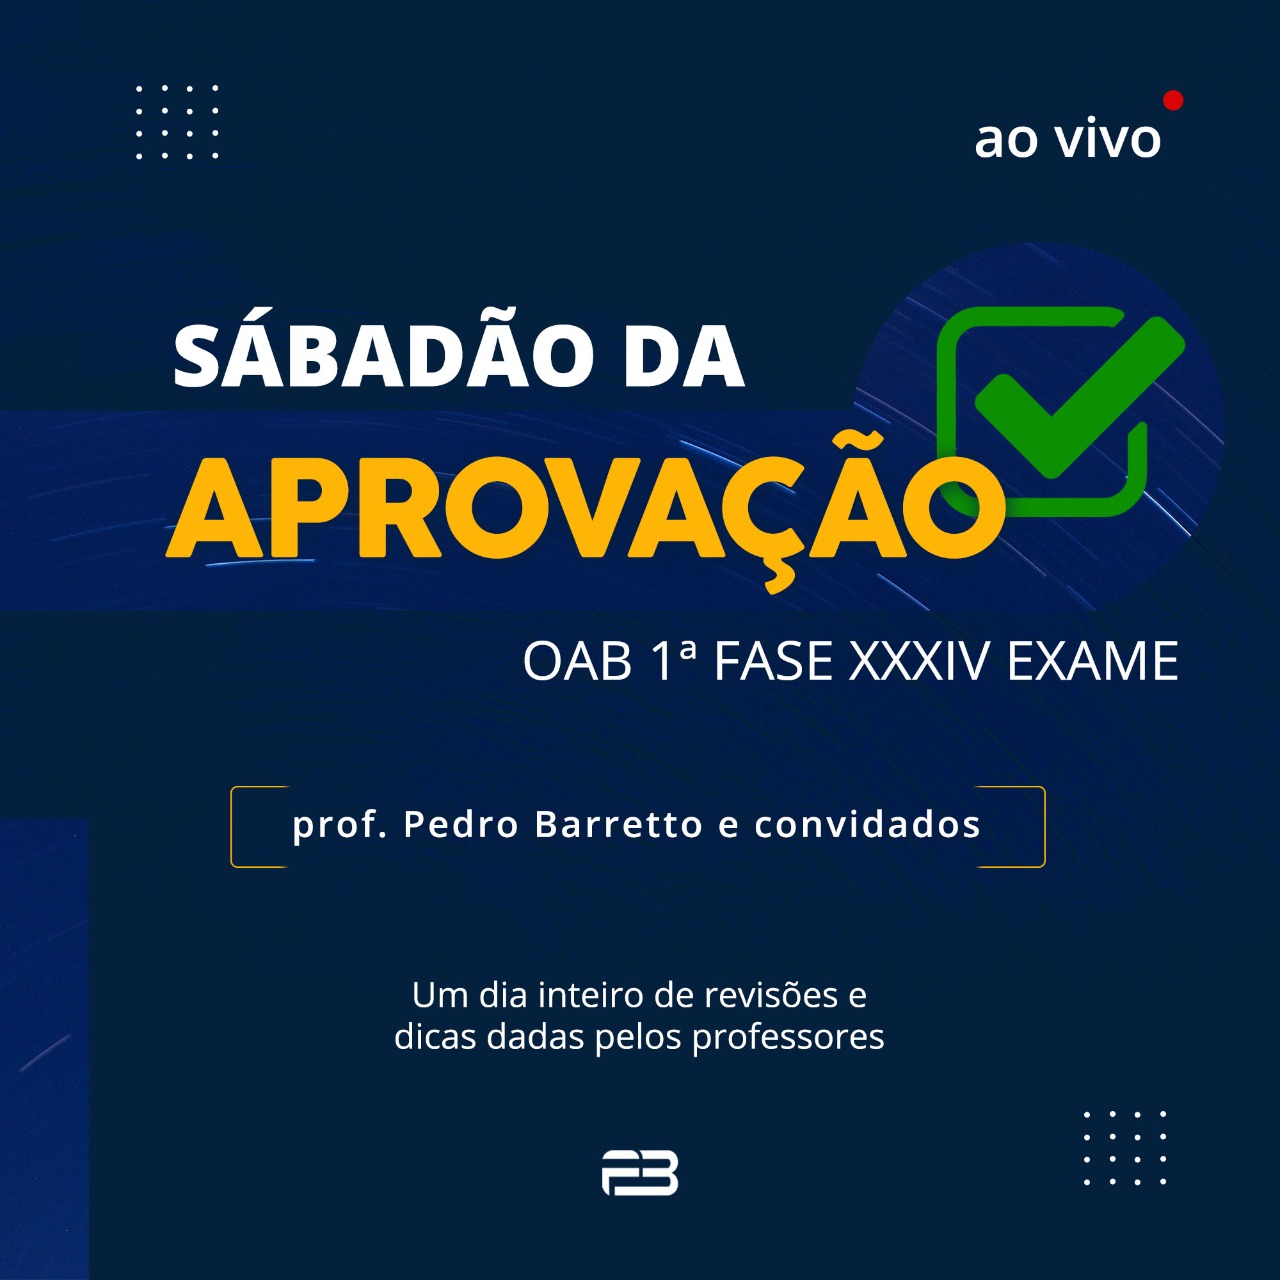 SABADÃO DA APROVAÇÃO - OAB 1º FASE XXXIV EXAME